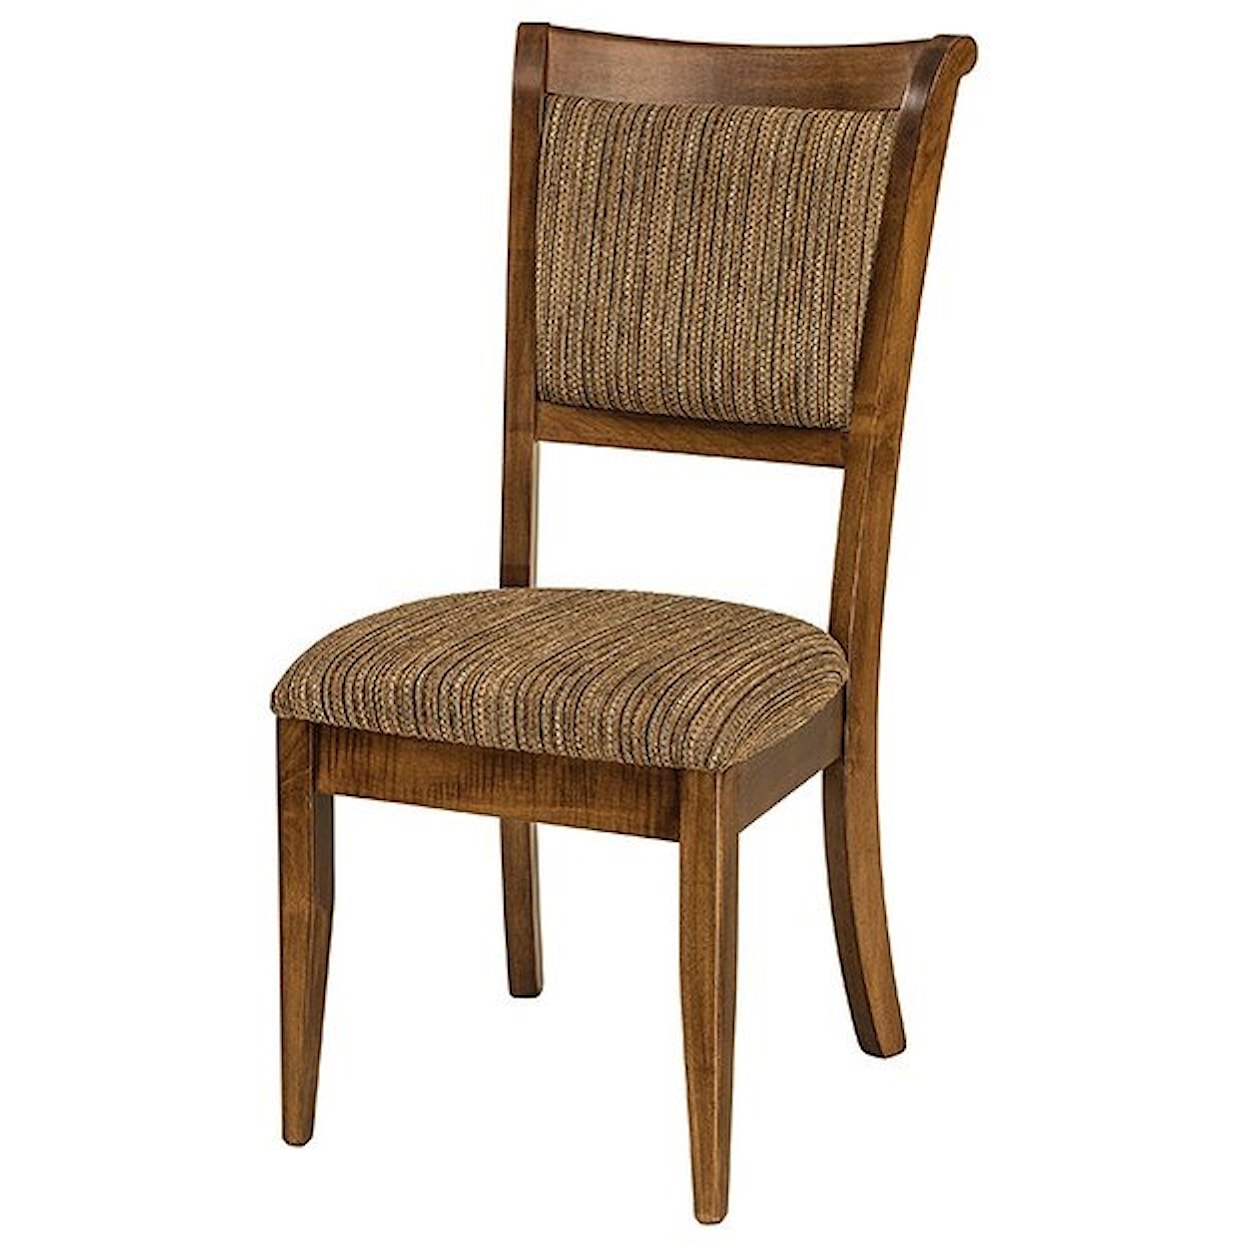 F&N Woodworking Adair Side Chair